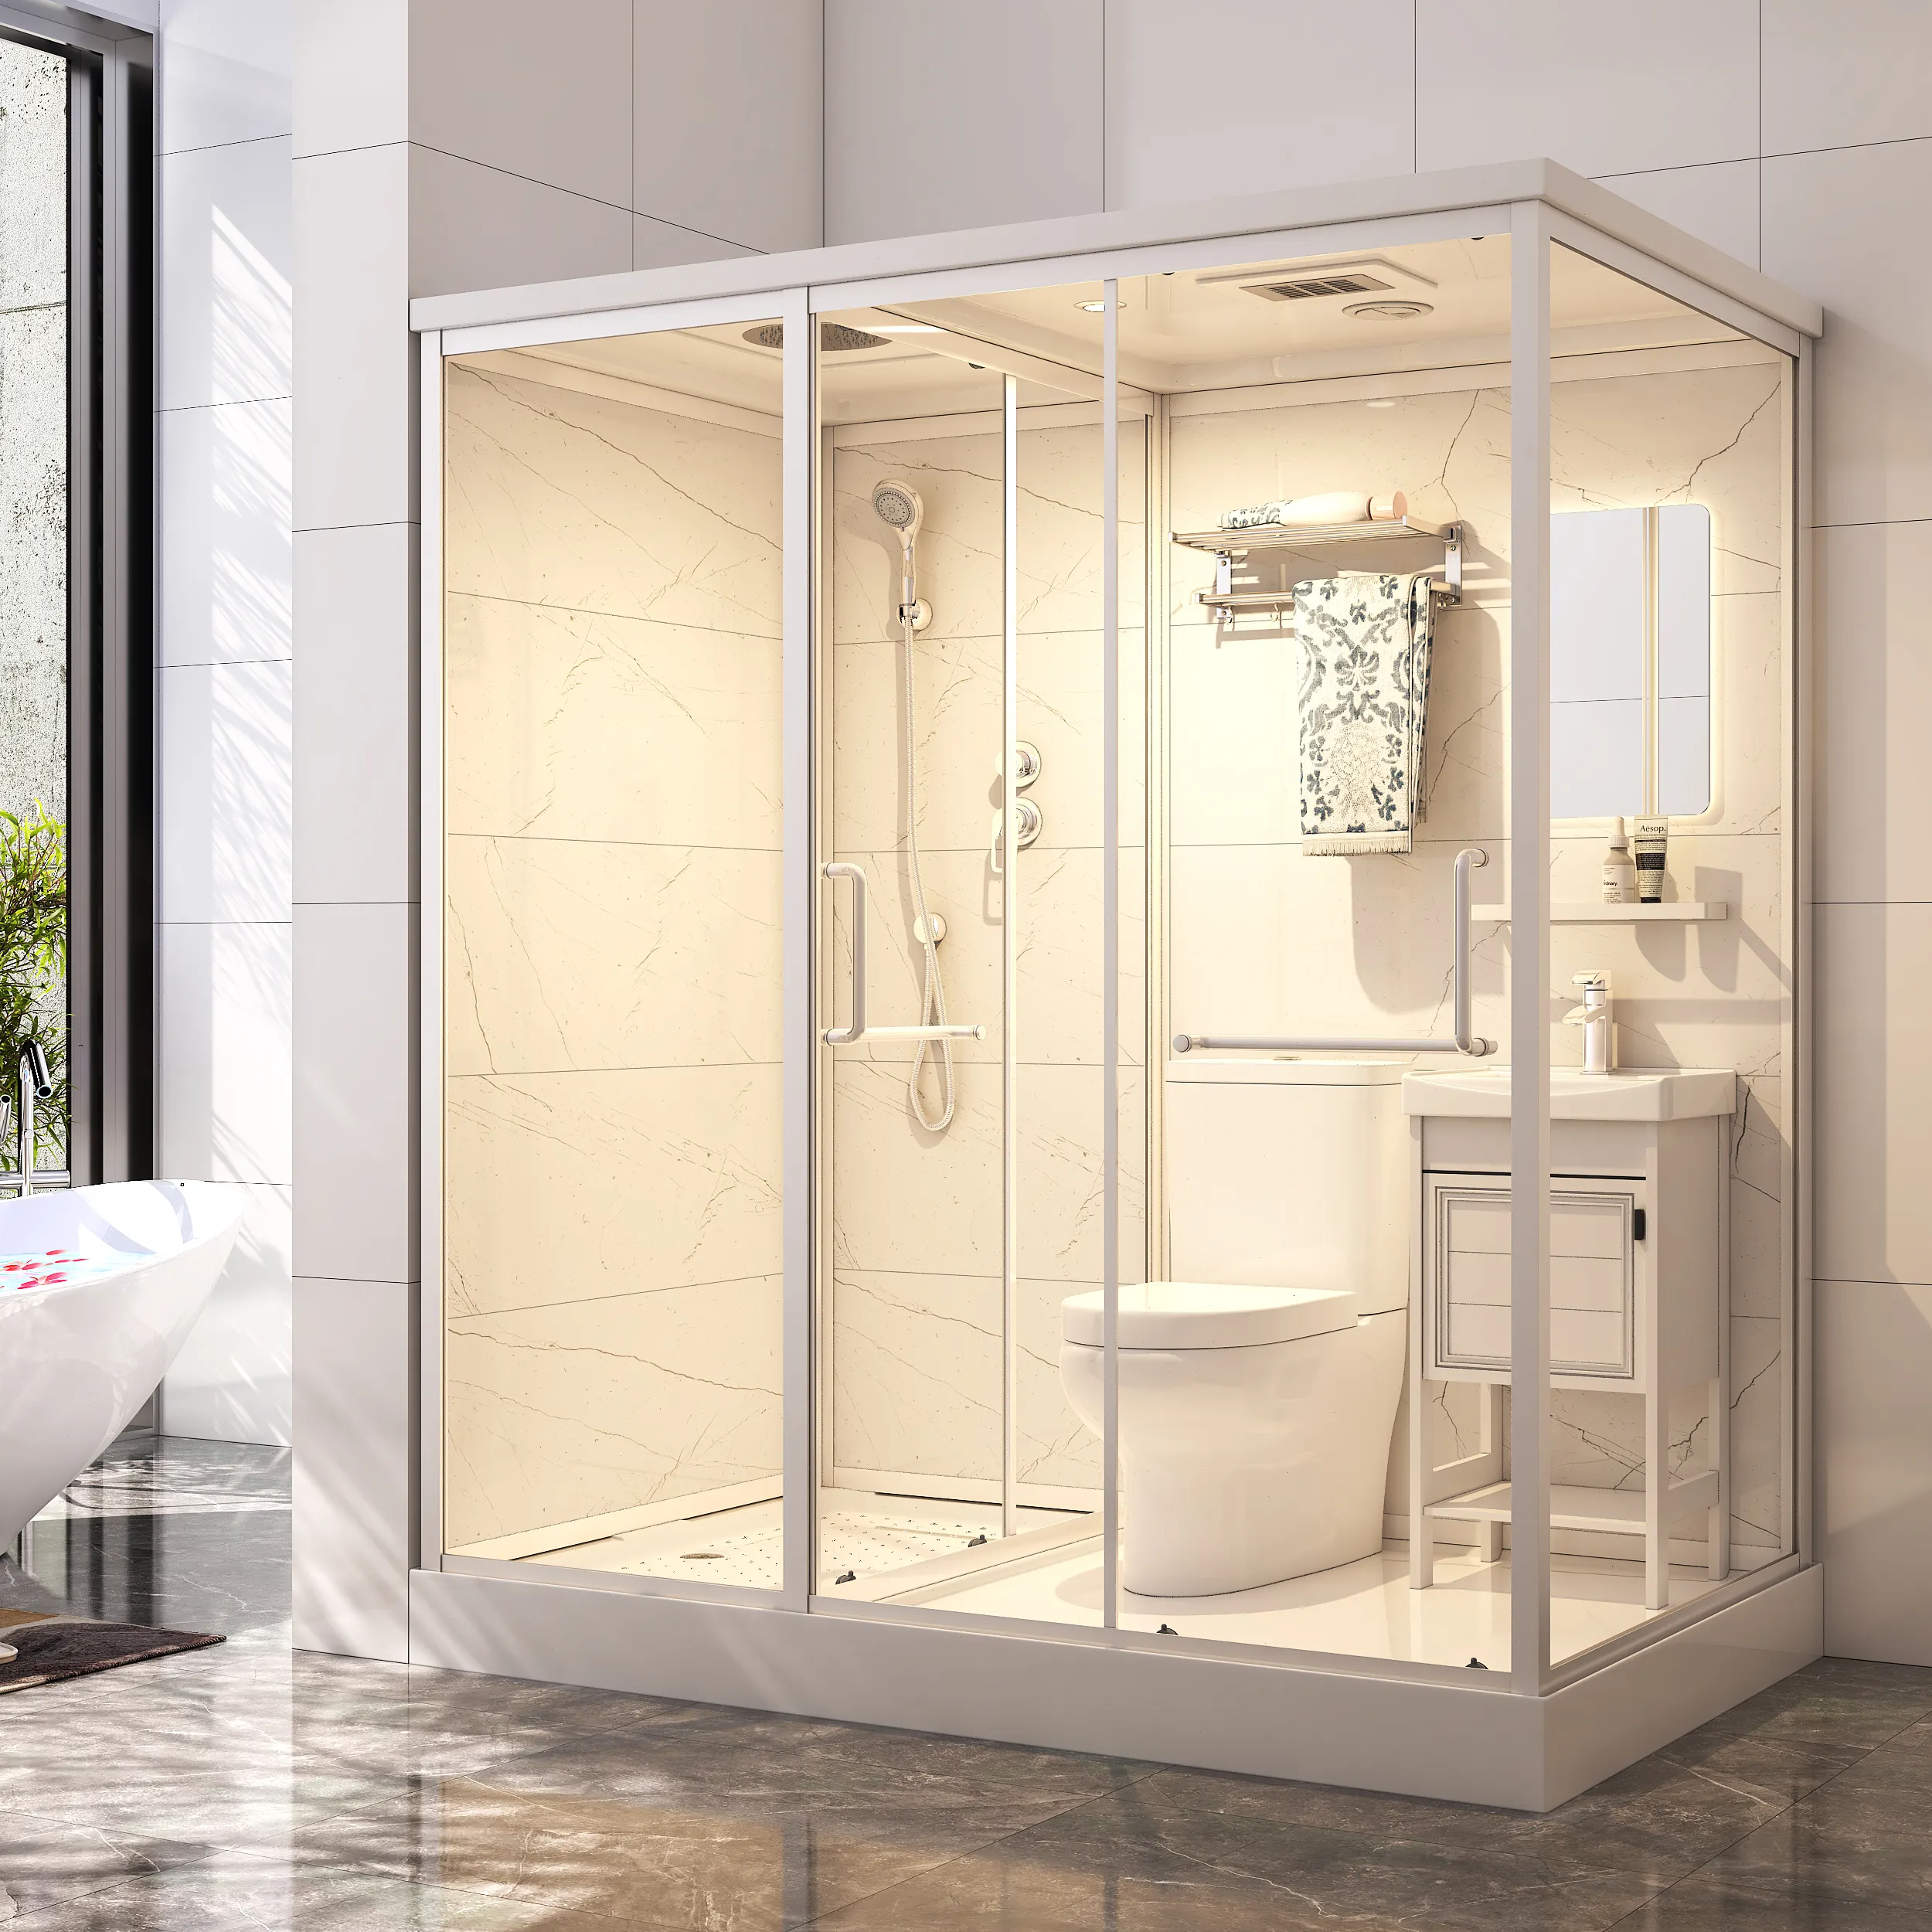 Lusso prefabbricato per bagno baccelli porta scorrevole tutto in un unico bagno set con soffione doccia e servizi igienici